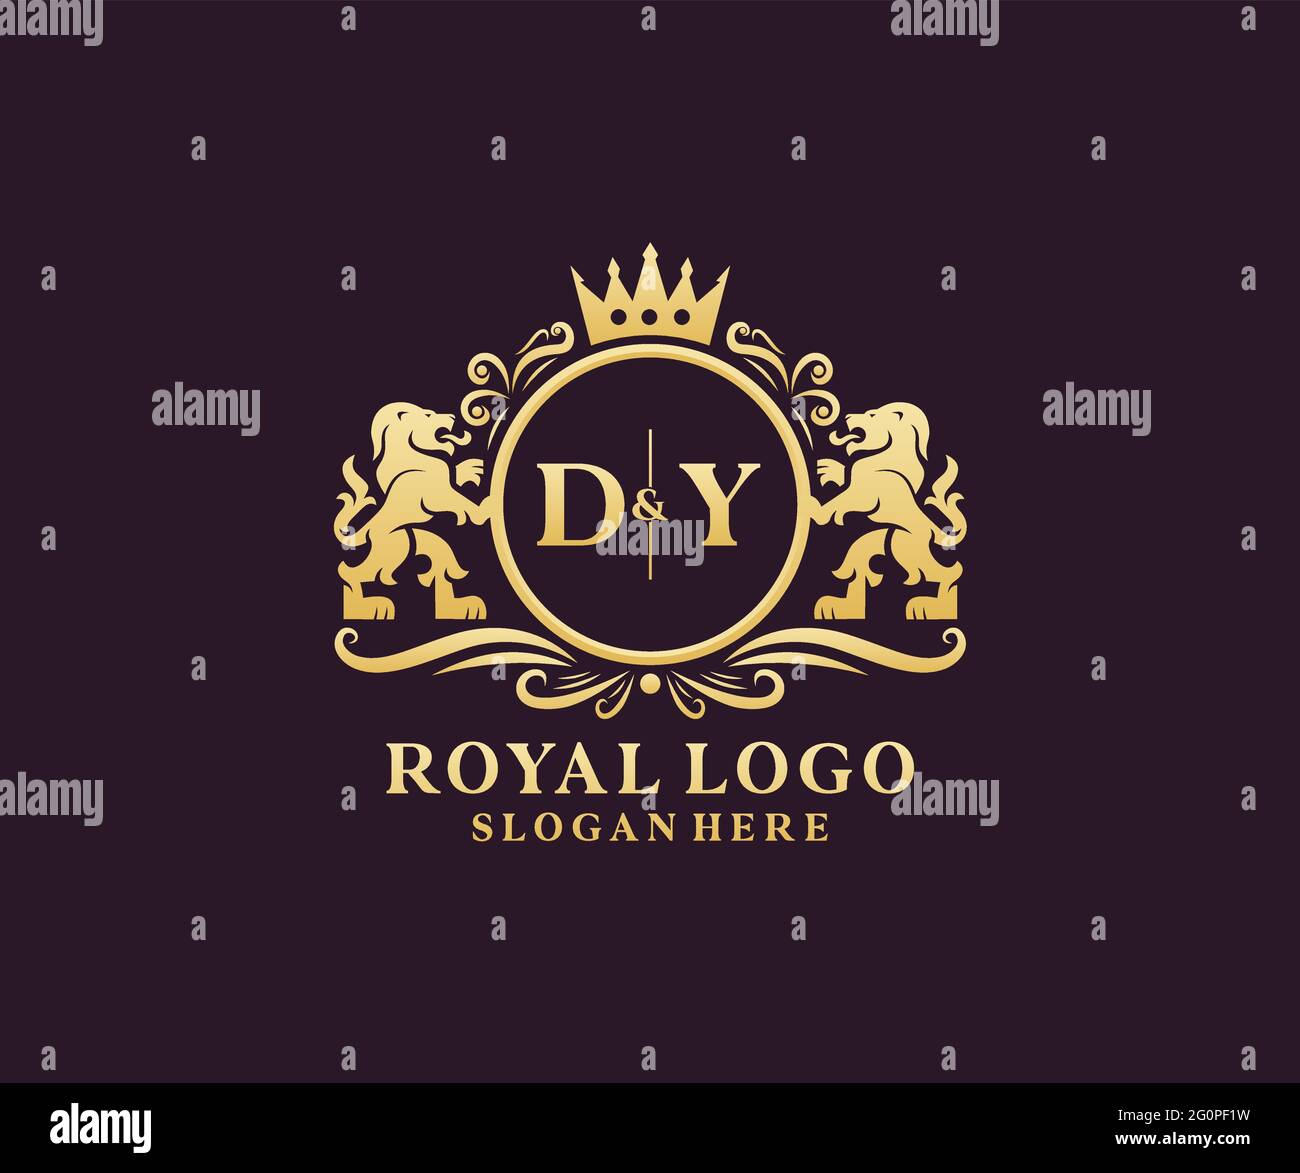 DY Letter Lion Royal Luxury Logo Vorlage in Vektorgrafik für Restaurant, Royalty, Boutique, Cafe, Hotel, Wappentisch, Schmuck, Mode und andere Vektor il Stock Vektor